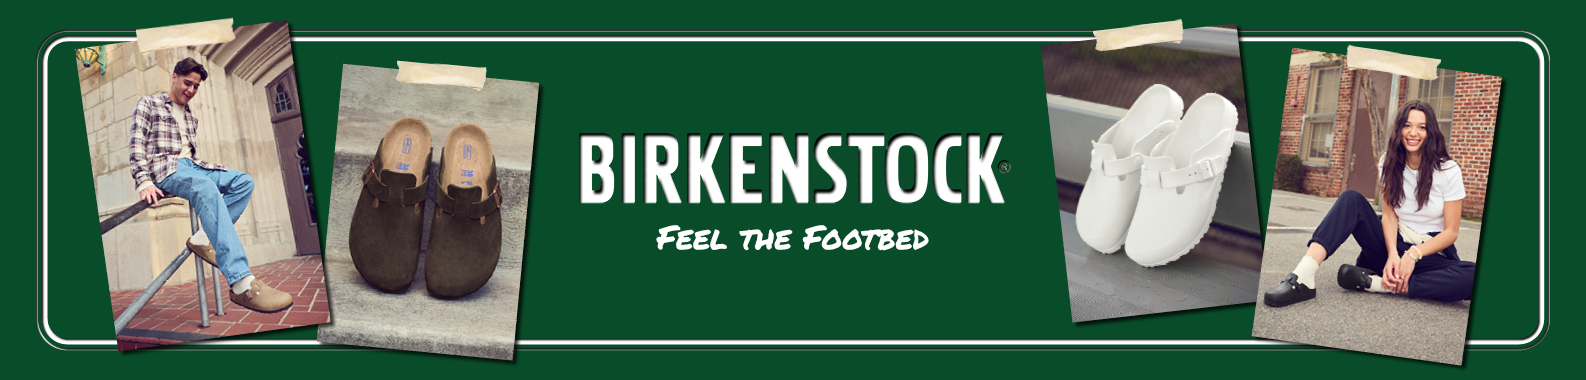 Birkenstock header image